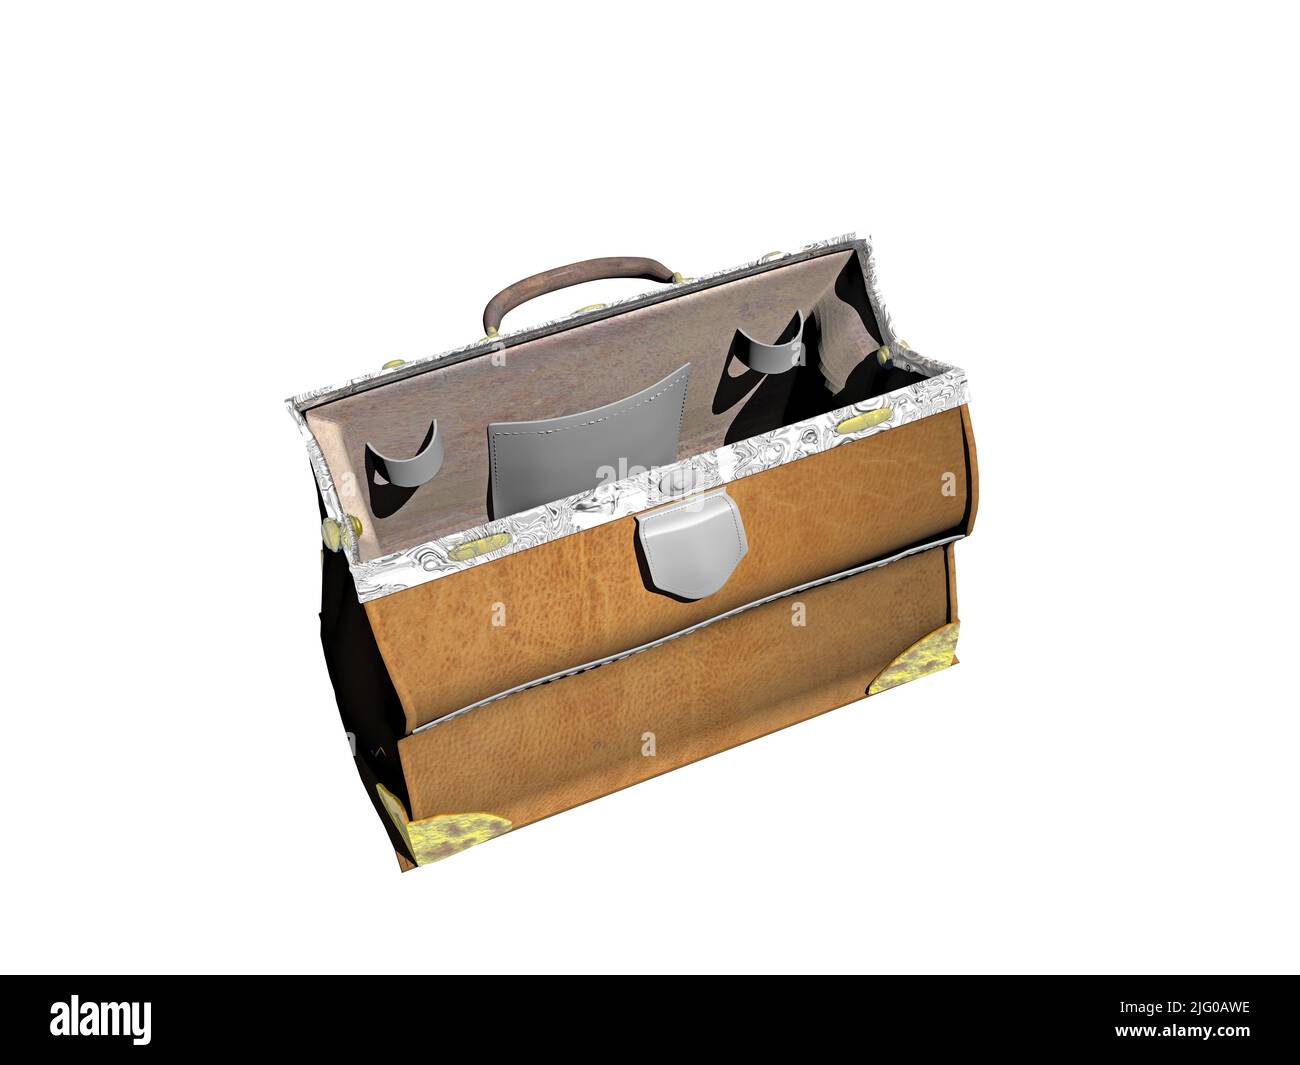 Braune Arzttasche aus Leder für Hausbesuche Stockfotografie - Alamy